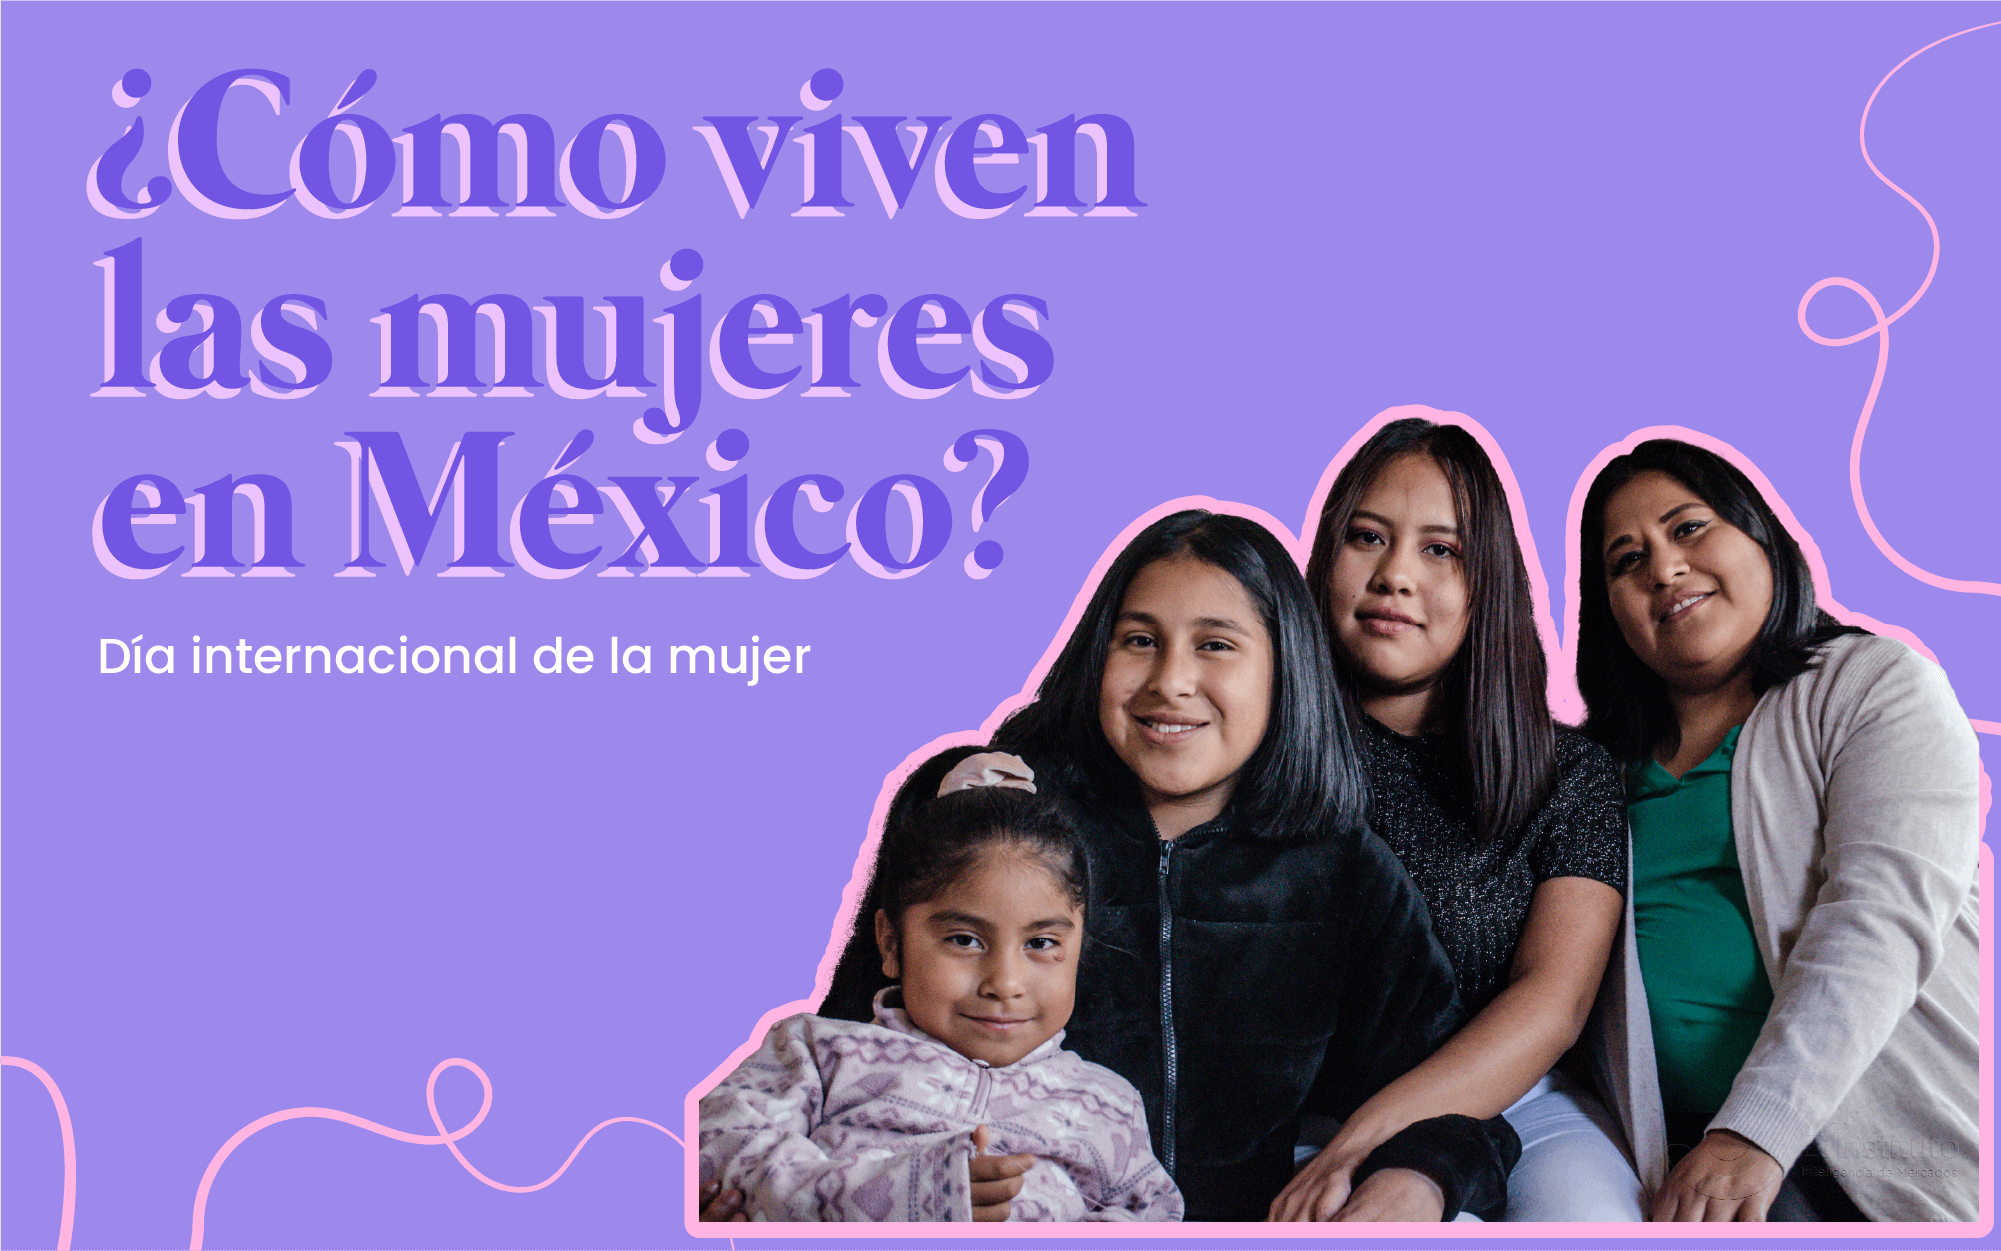 Las mujeres mexicanas han conseguido avances en la participación en ámbitos como el económico, el acceso a la educación y el uso de la tecnología, revelan los hallazgos de Demografía y Data Mining de El Instituto.